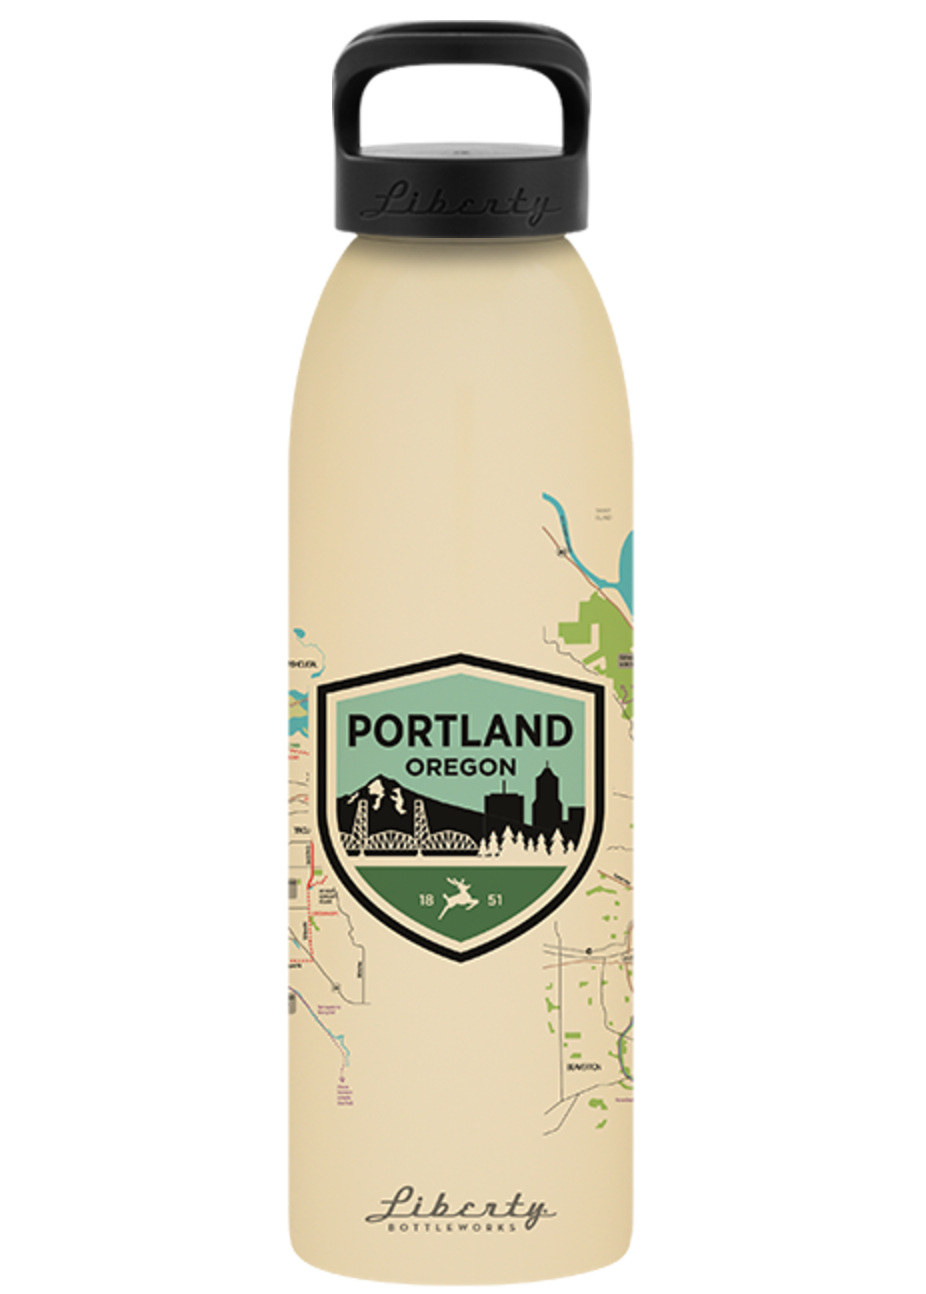 Portland-themed water bottle